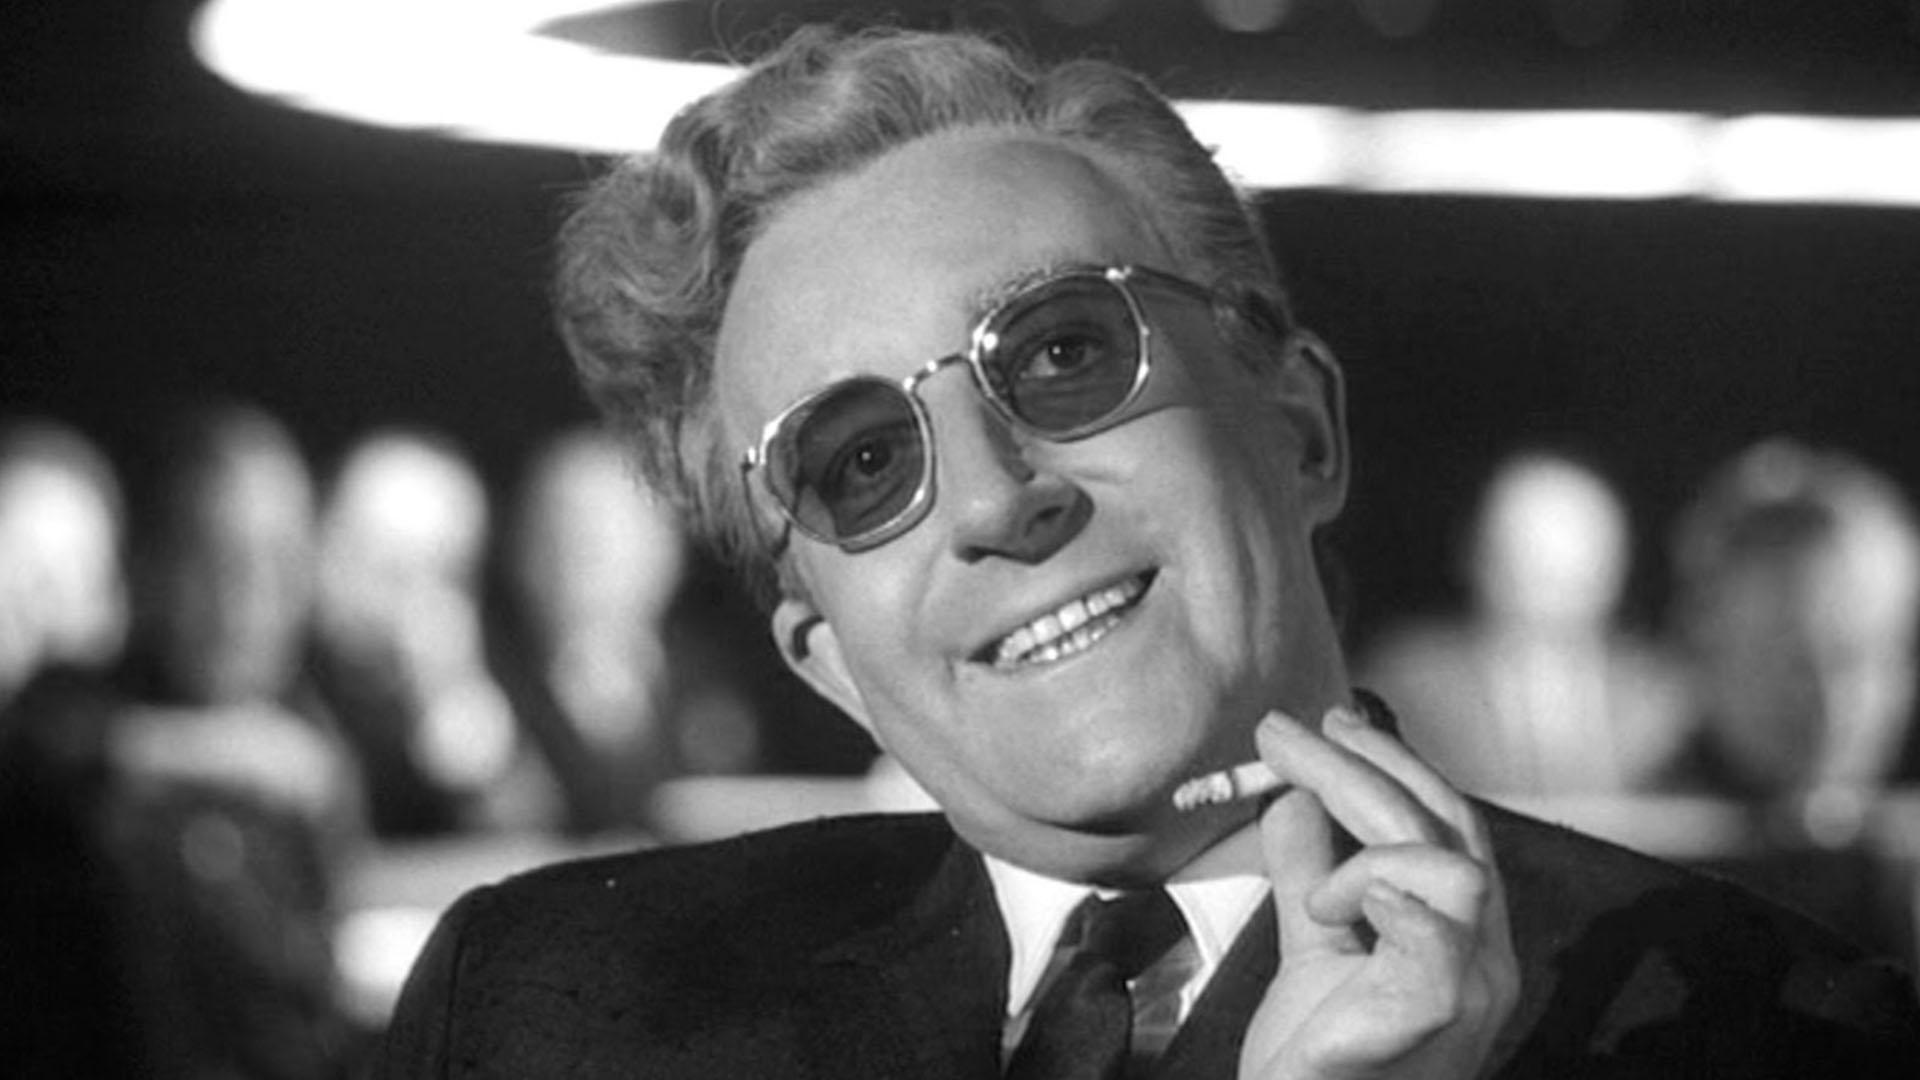 پیتر سلرز در حال سیگار کشیدن در جلسه در فیلم Dr. Strangelove